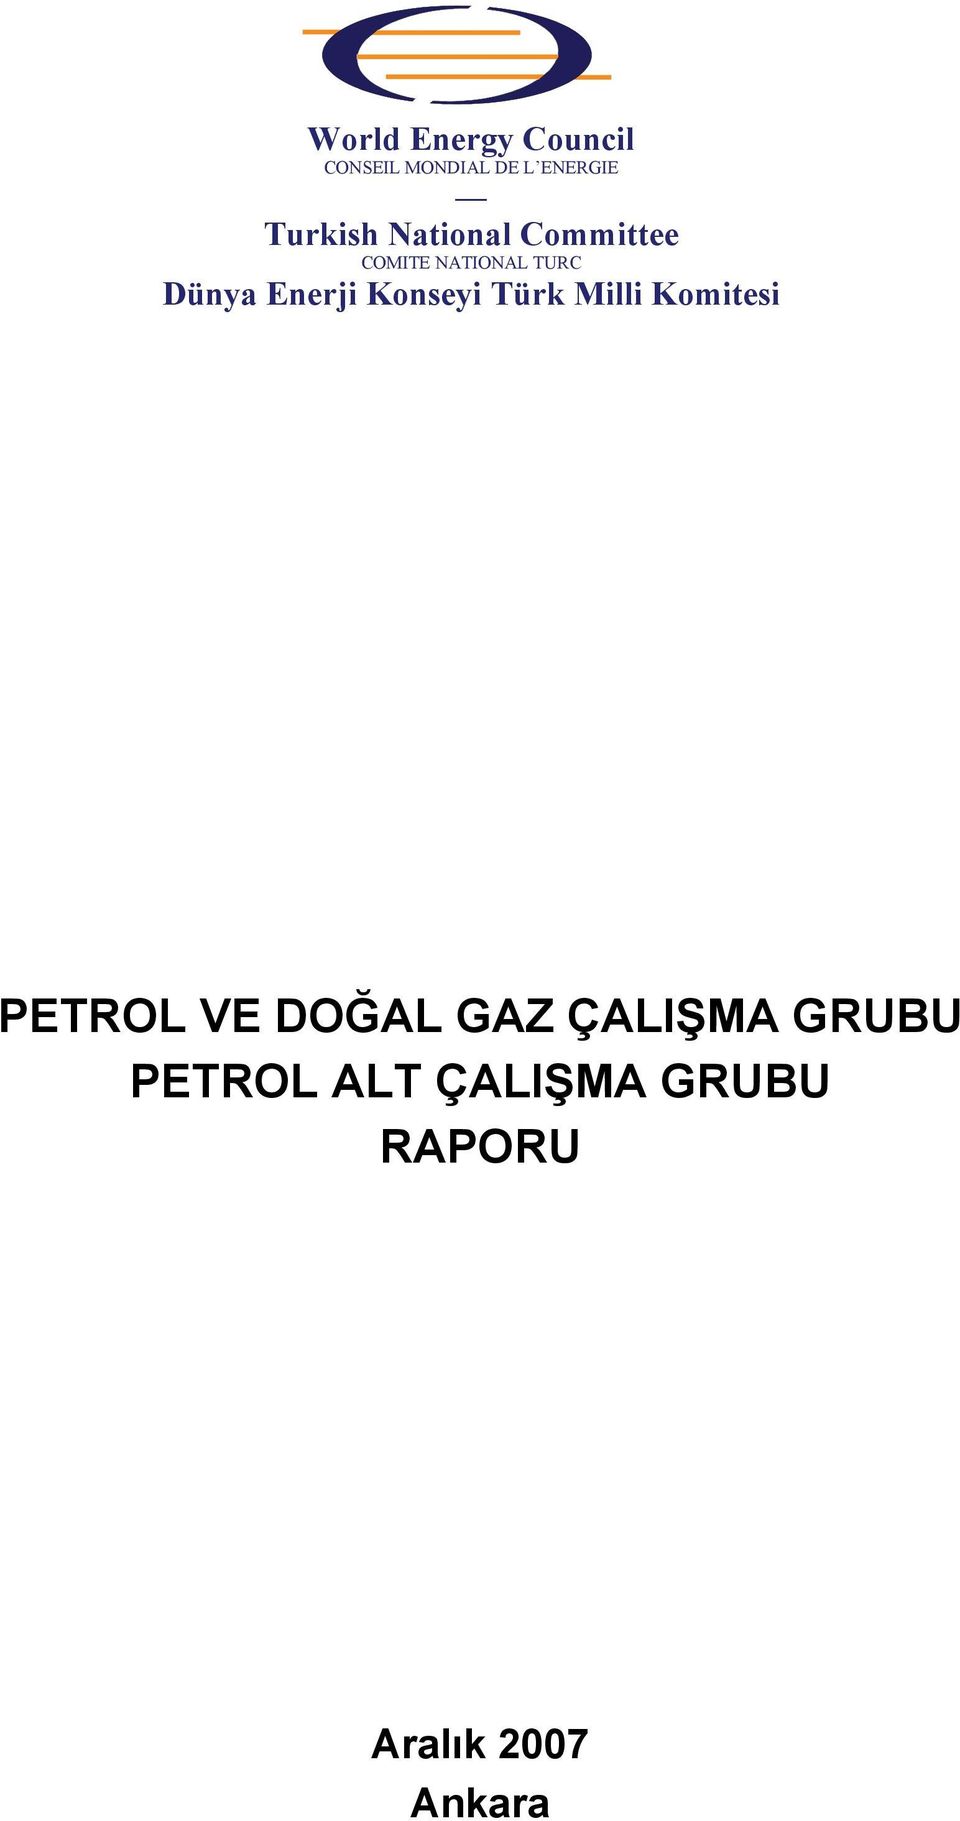 Enerji Konseyi Türk Milli Komitesi PETROL VE DOĞAL GAZ